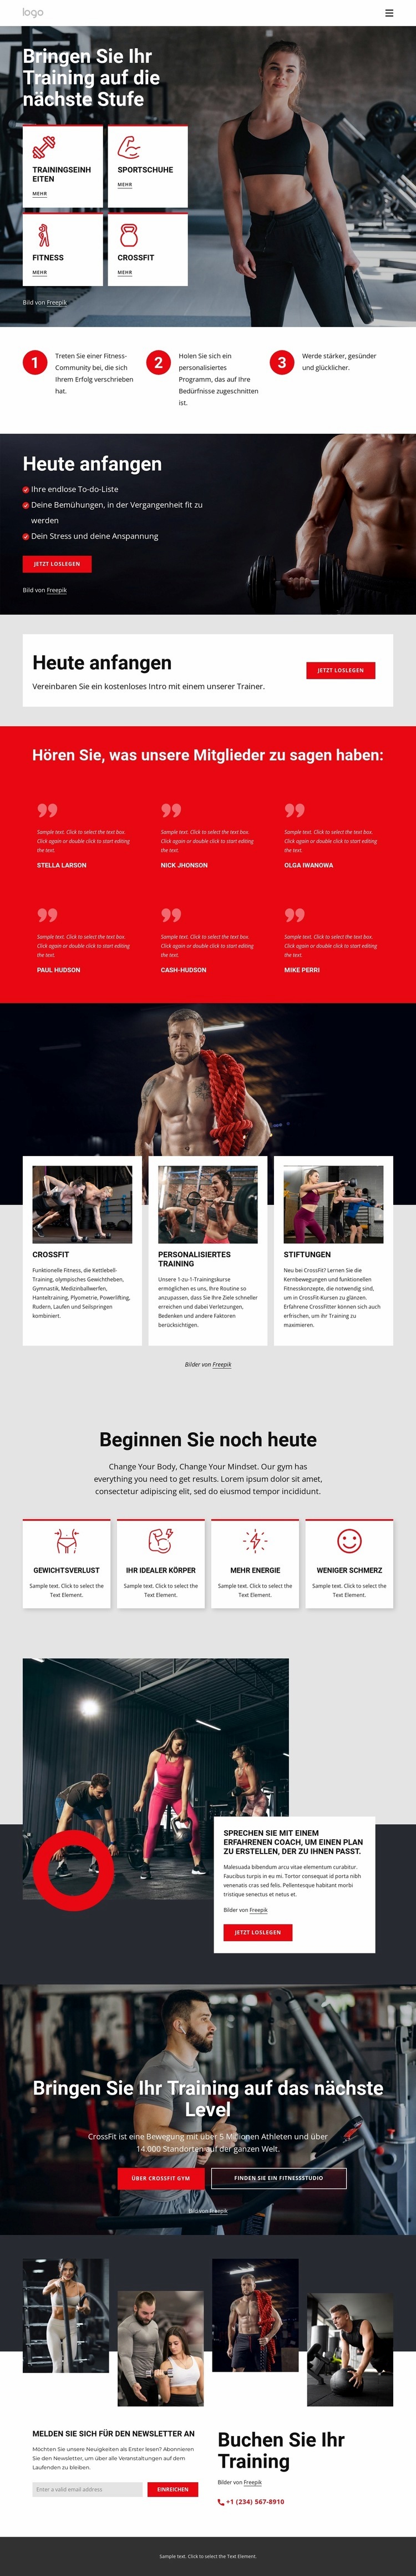 Crossfit-Trainingsgemeinschaft Website-Modell